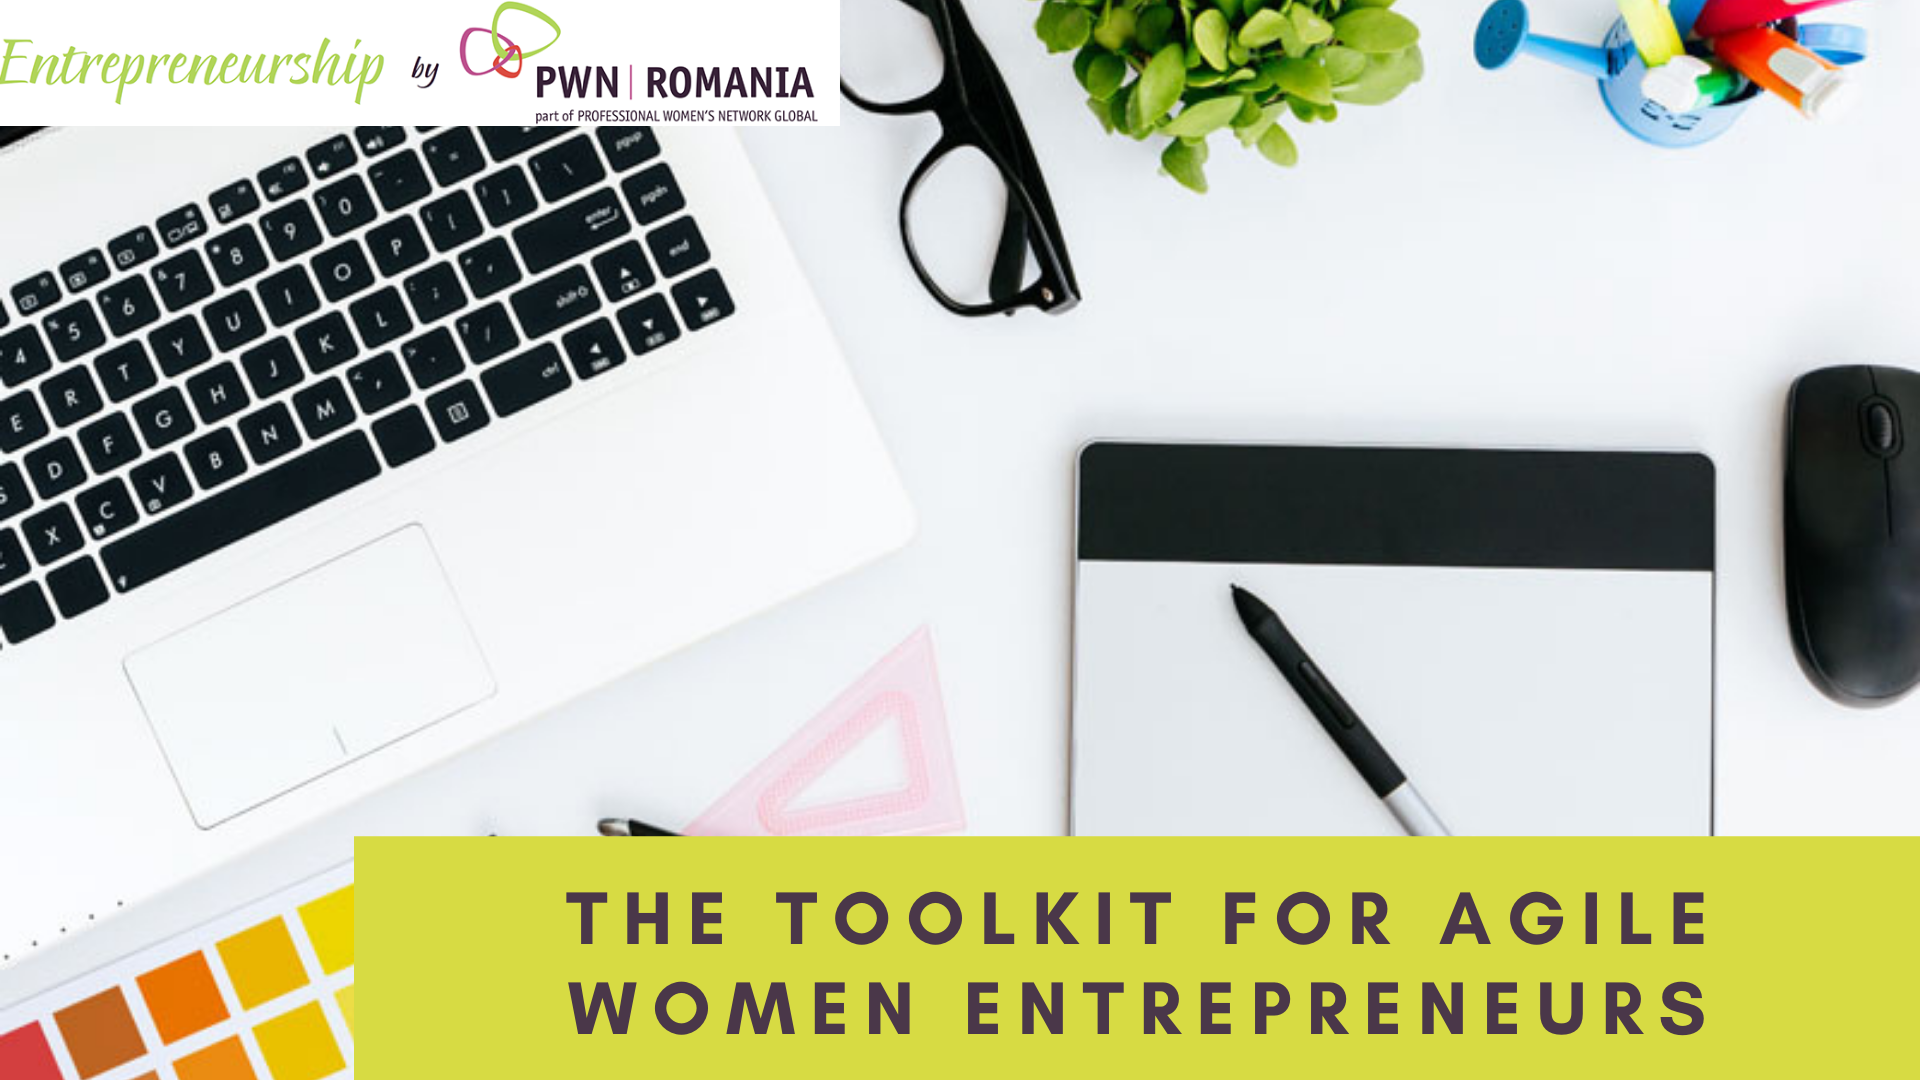 PWN Romania's Entrepreneur's Toolkit